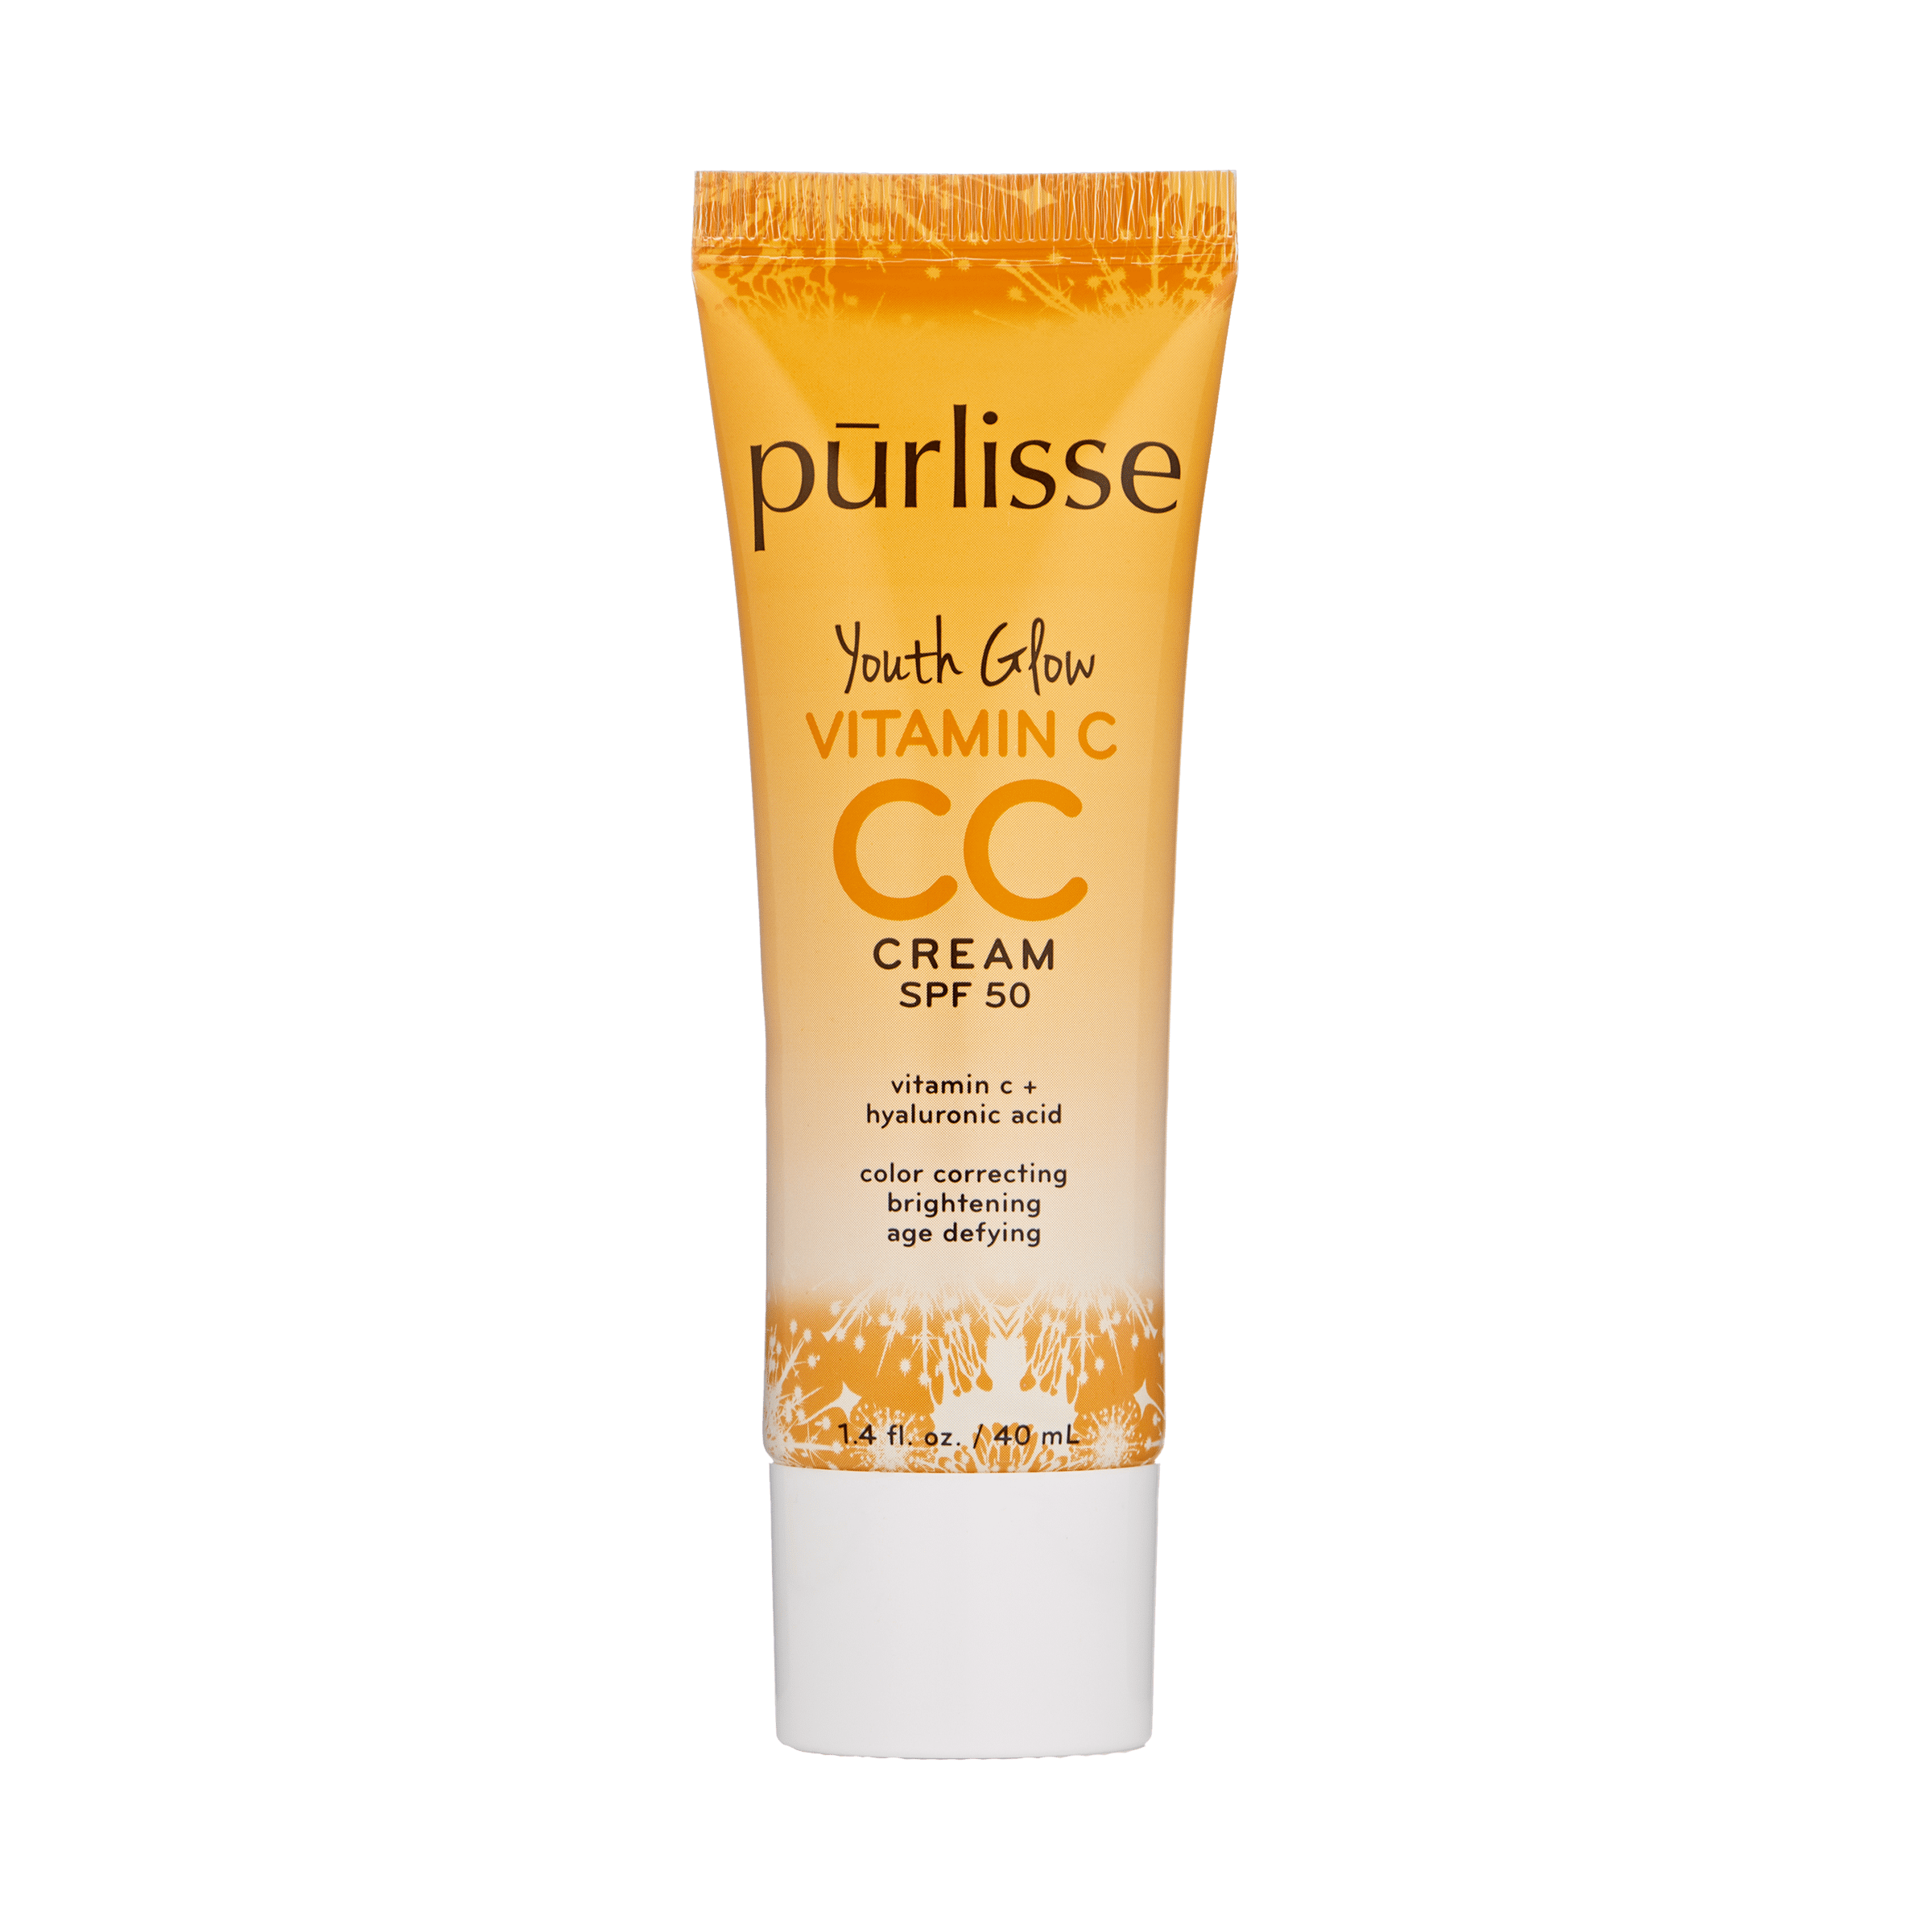 Pur-Lisse CC Cream SPF 50 Vitamin C Youth Glow, Fair, 1.4 fl oz 